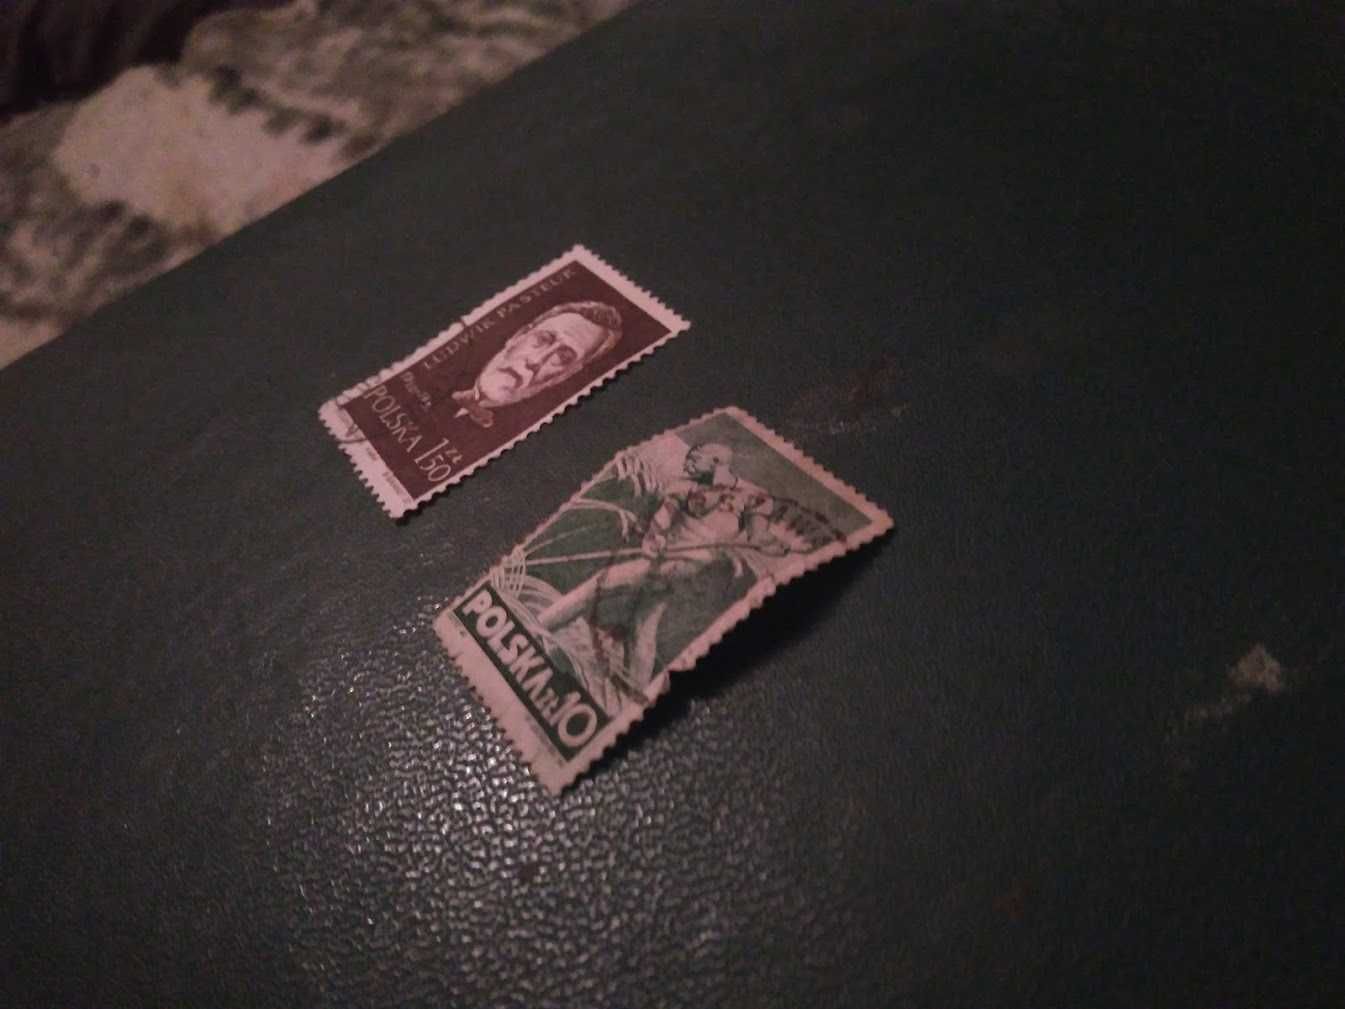 Stare znaczki, Polska